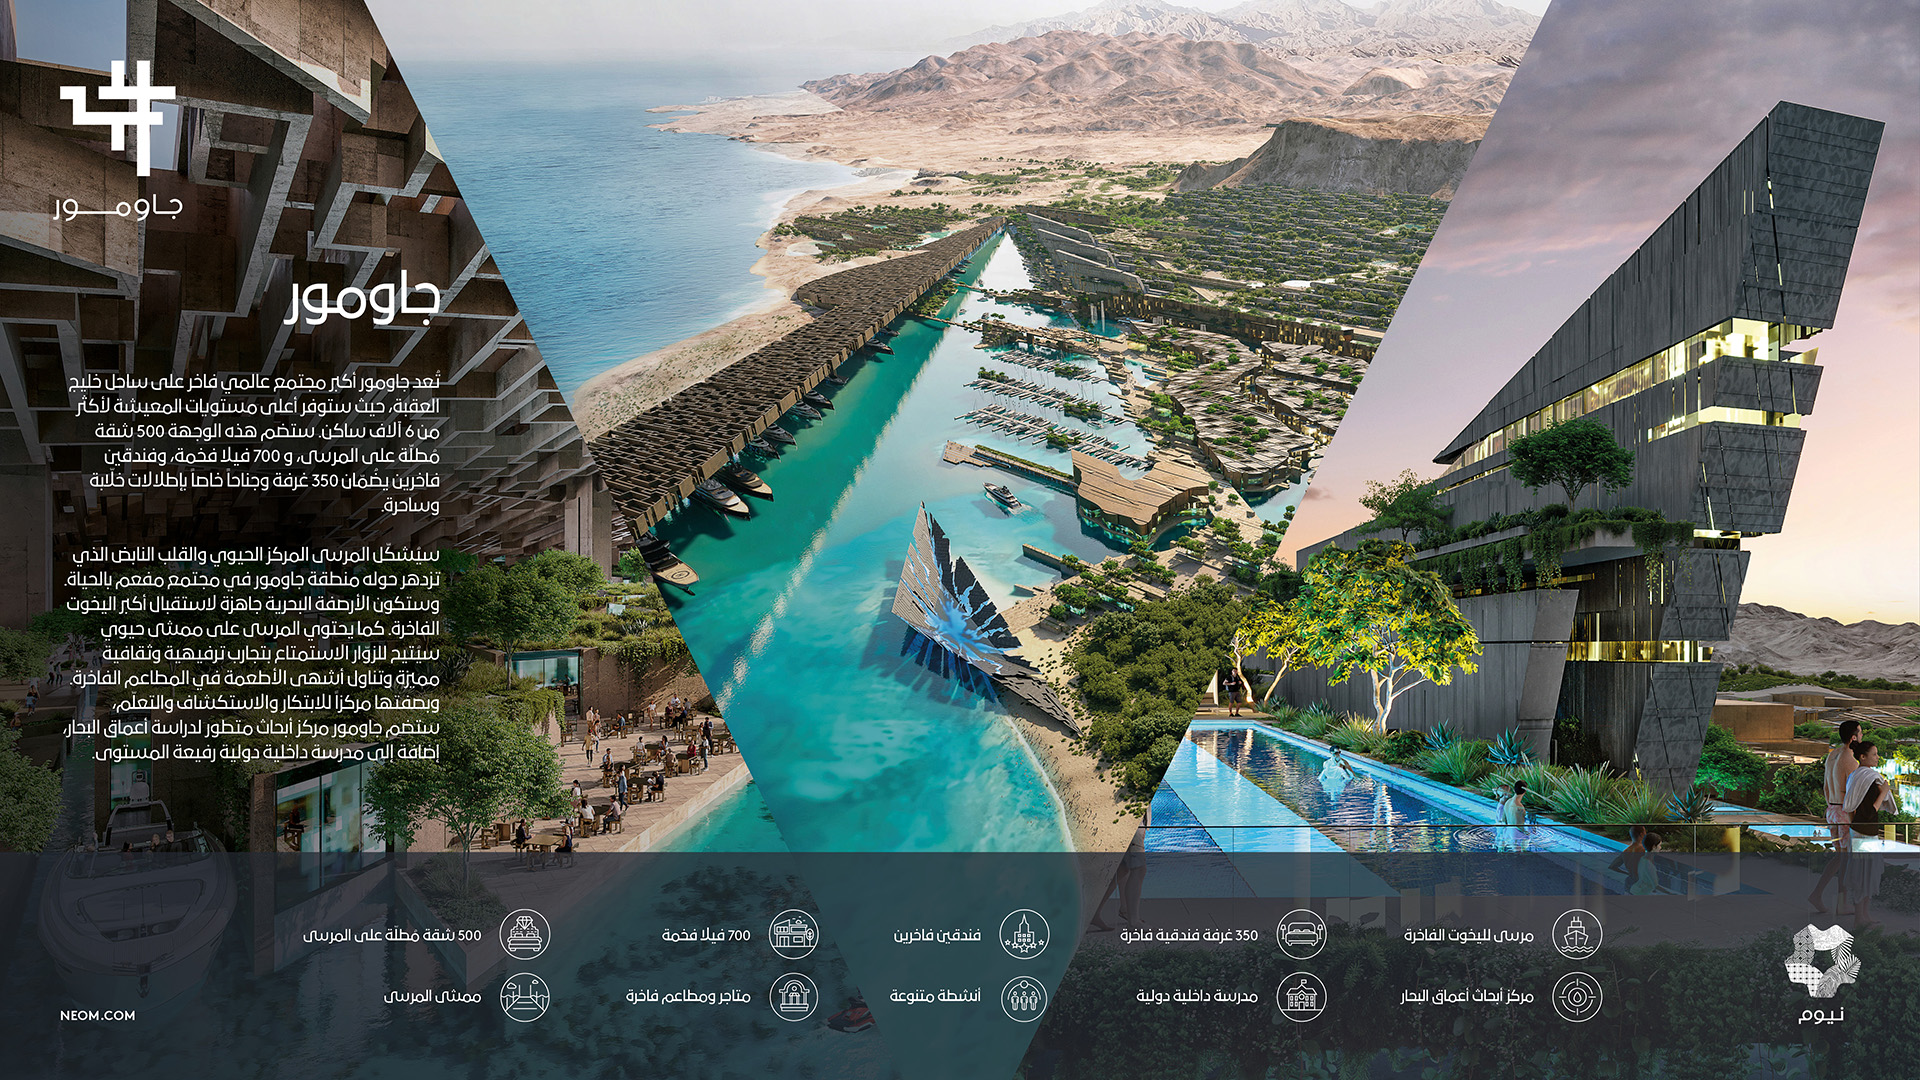 إنفوجرافيك لجاومور، مجتمع شاطئي فاخر مع مراسي، وفنادق، وشقق سكنية، ومركز بحوث متقدم على خليج العقبة